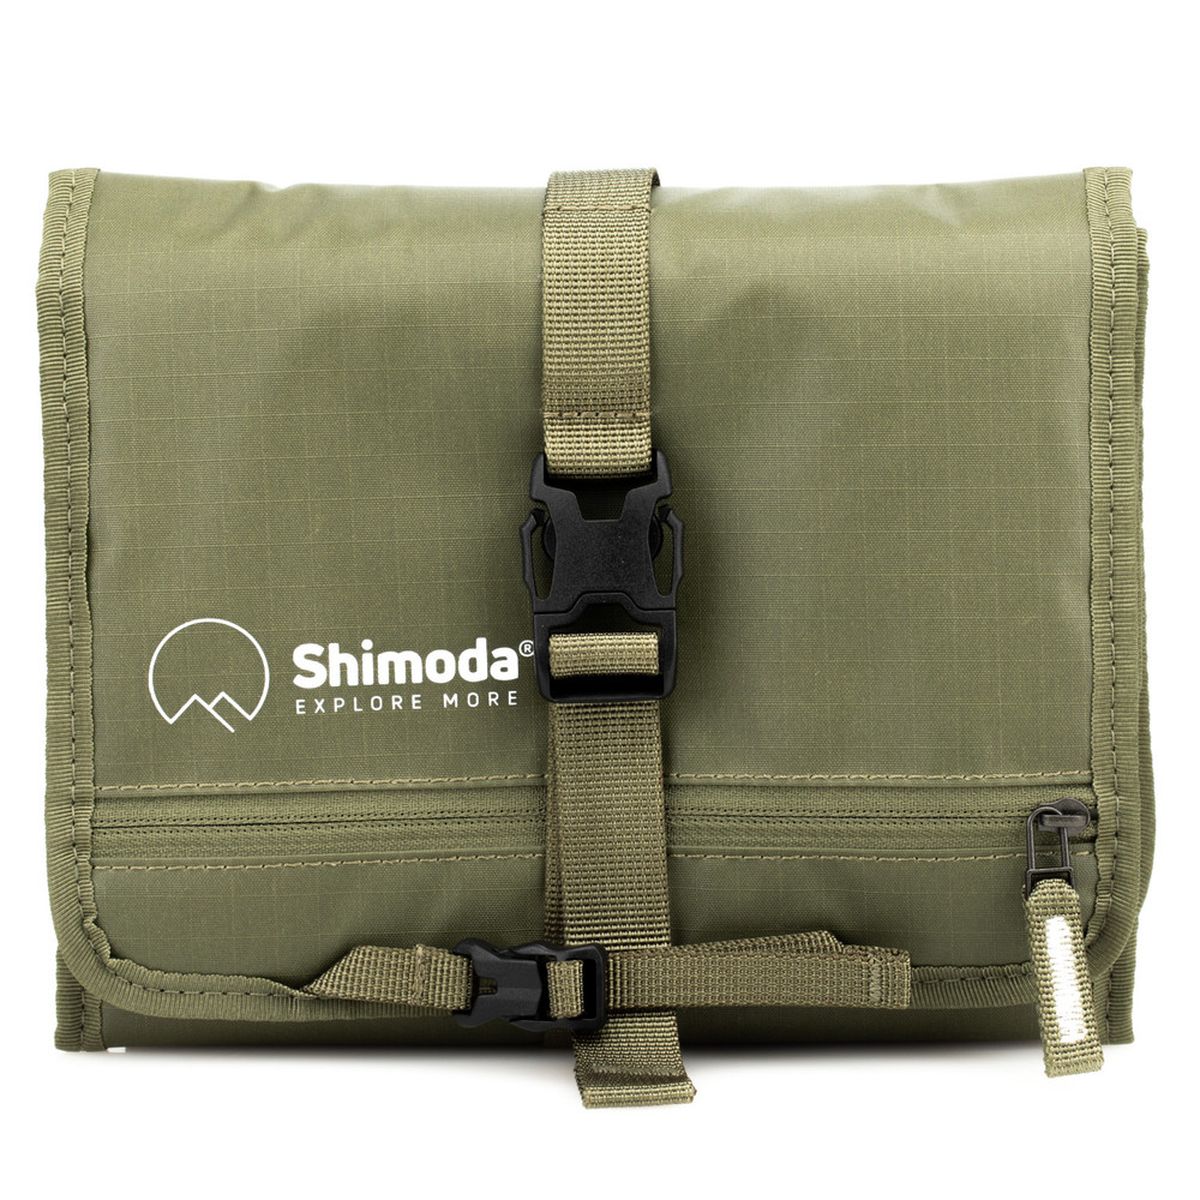 Shimoda Filter Wrap 150 - Army Green